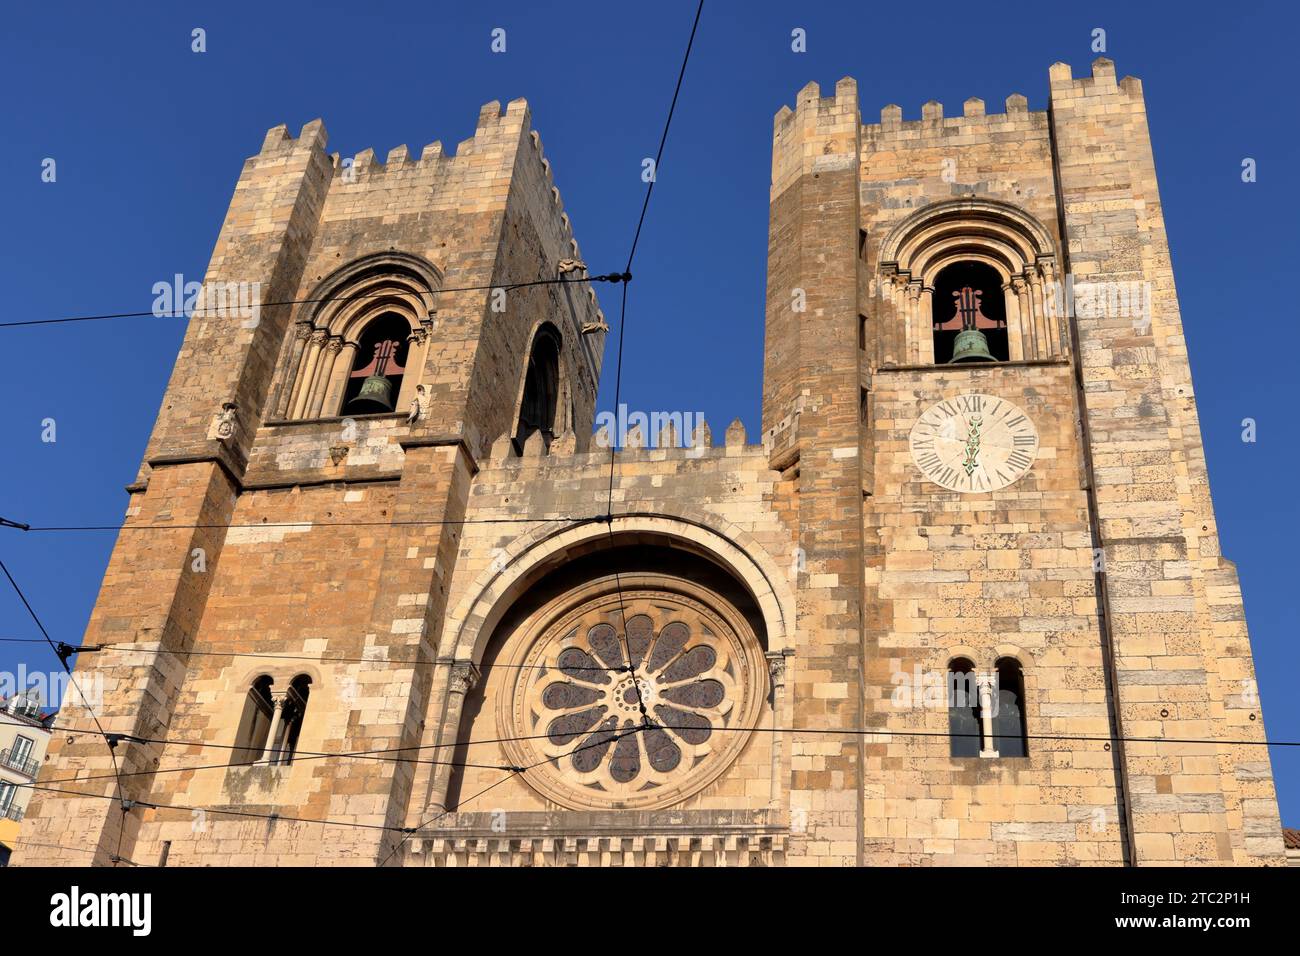 La cathédrale Sainte Marie majeure, souvent appelée cathédrale de Lisbonne ou la Sé, la plus ancienne église de la ville, siège du Patriarcat de Lisbonne Banque D'Images